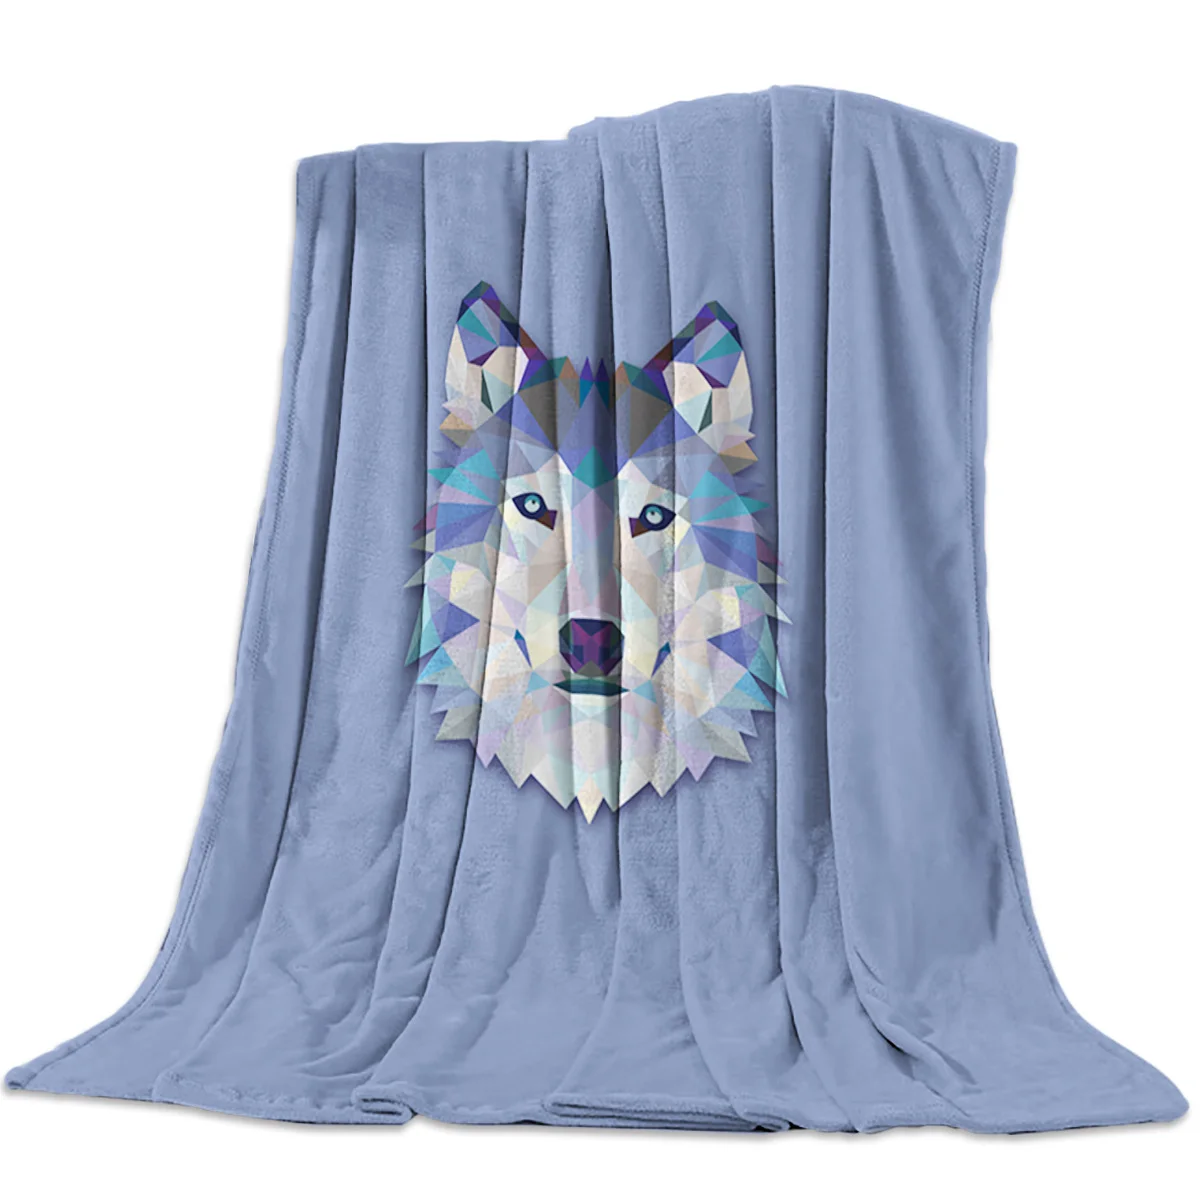 

Viking Wolf Totem Bedspread Blanket High Soft Flannel Blankets for Sofa Bed Car Portable Density Super